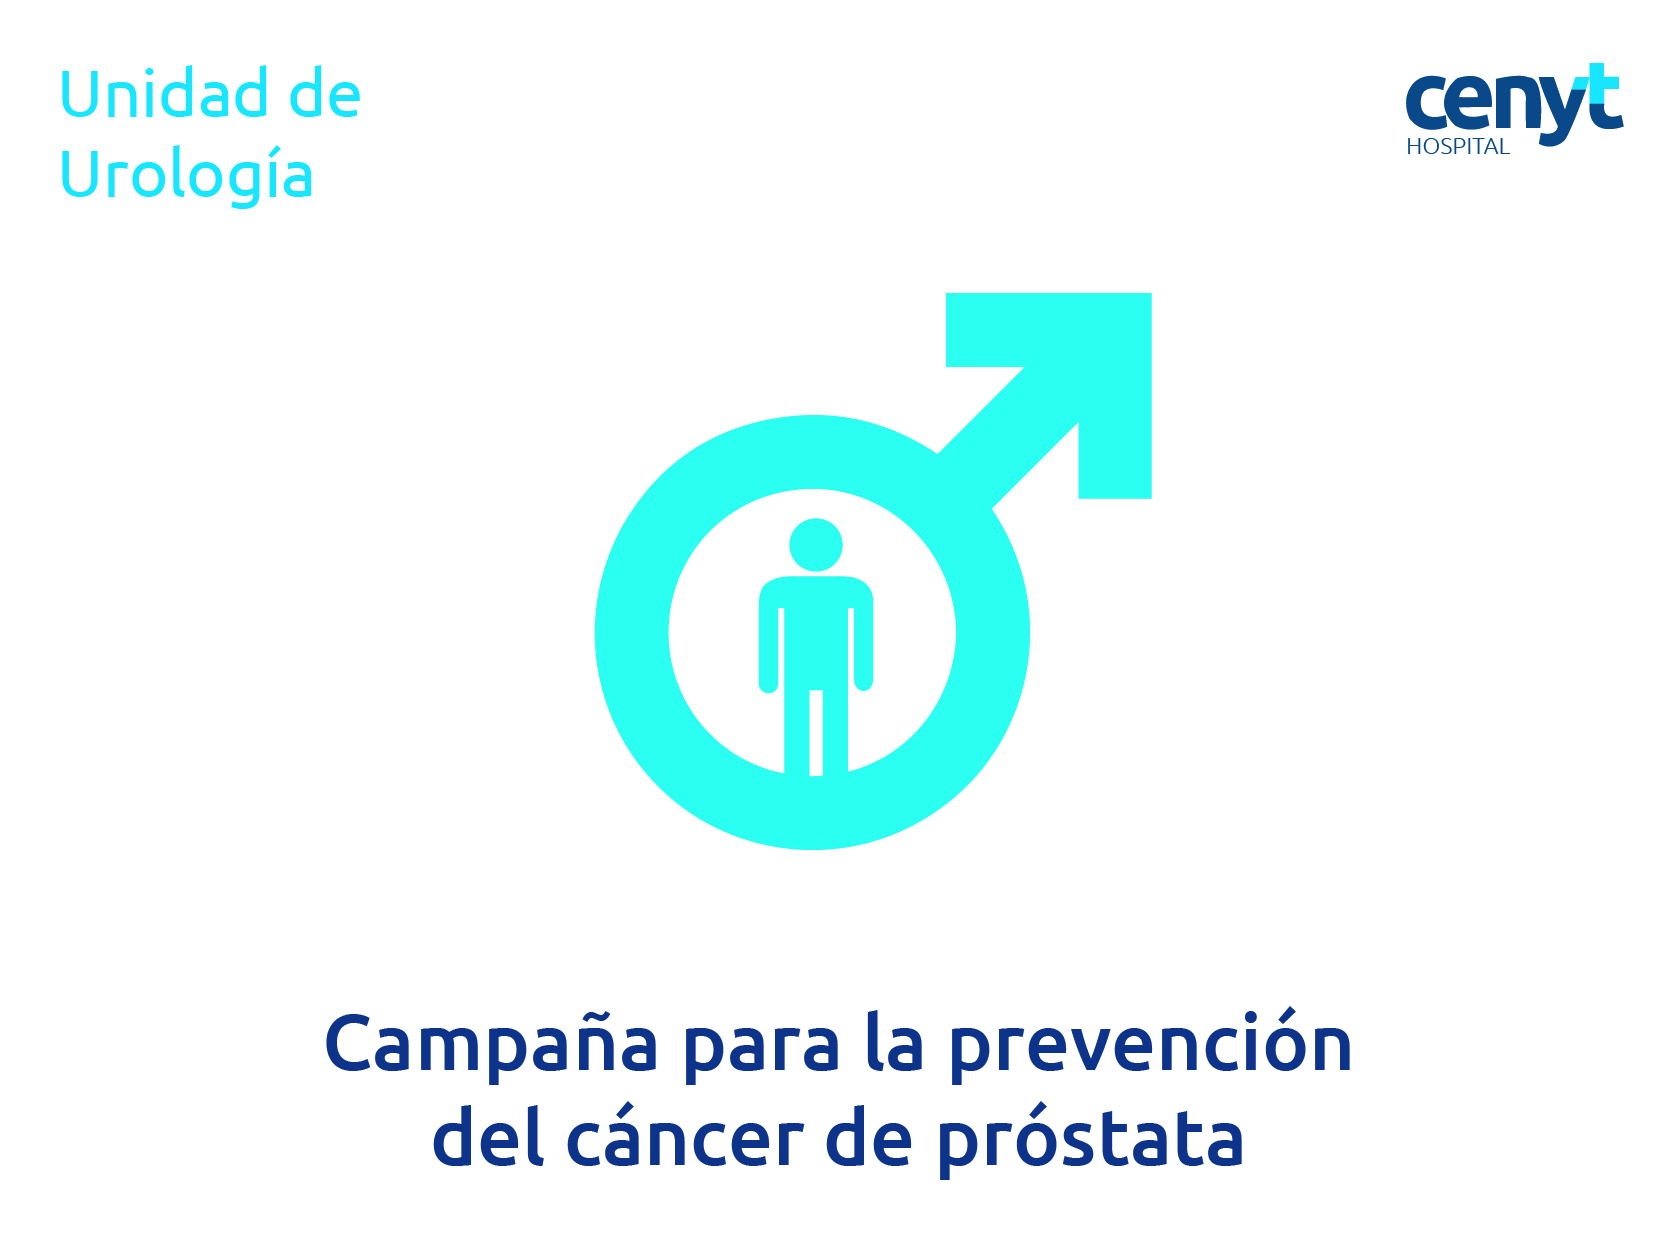 prostate - Traduction roumaine – Linguee, Cancer de prostata como prevenir